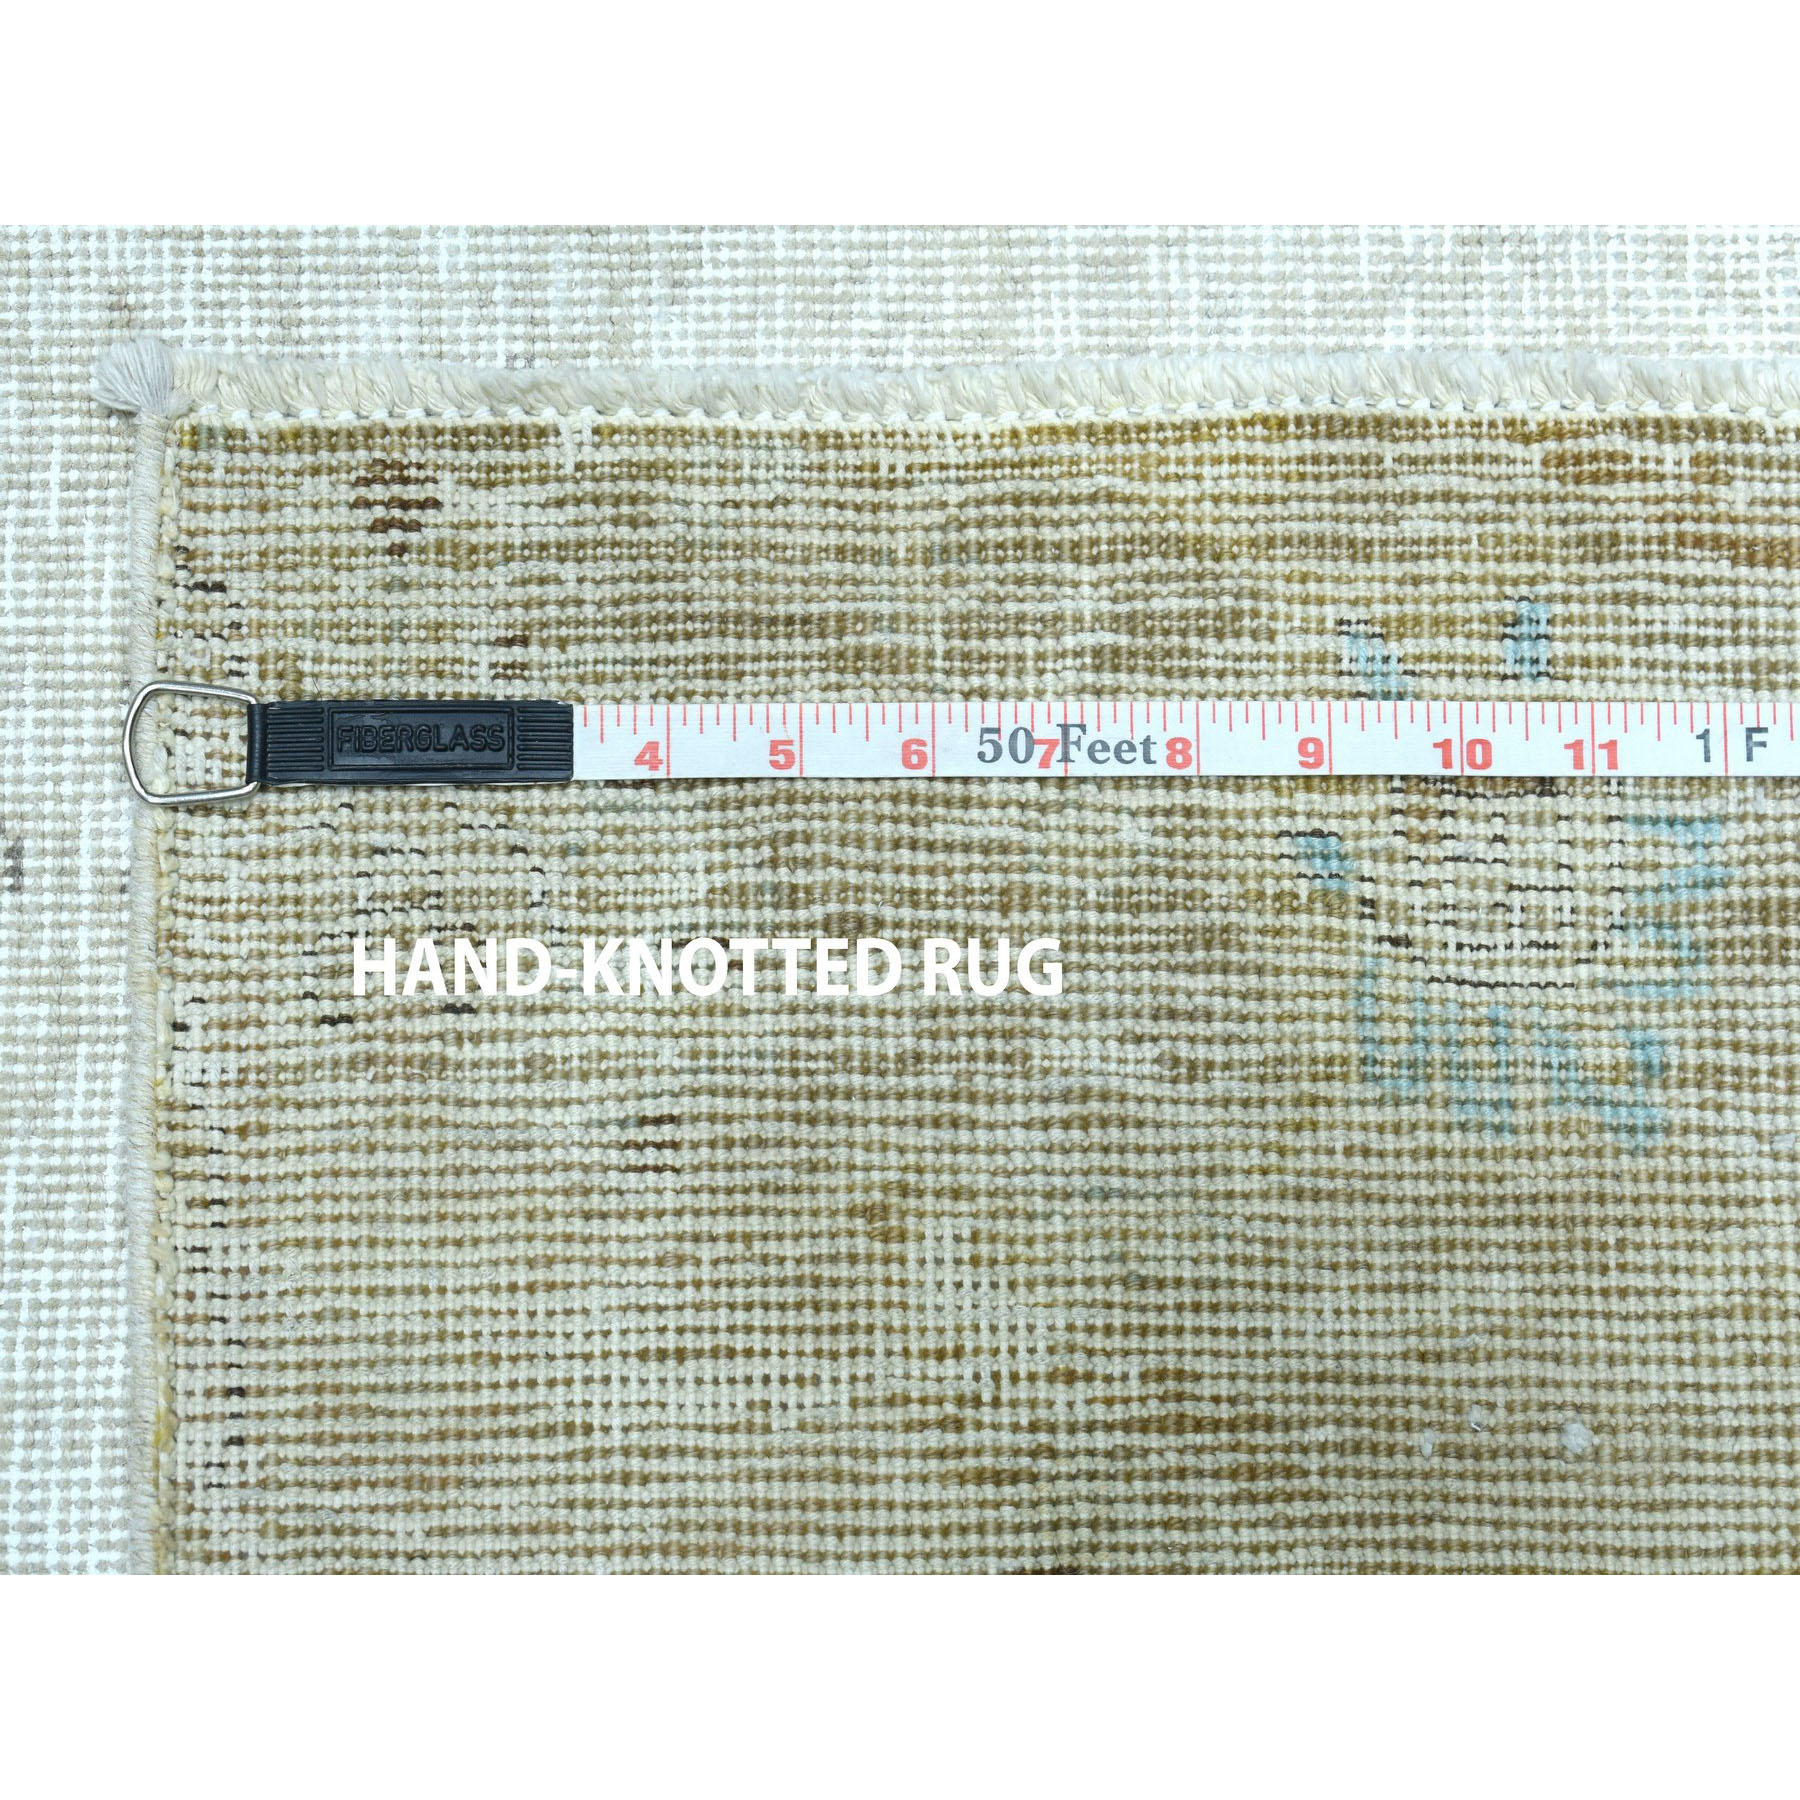 8-10 x12- Vintage White Wash Tabriz Worn Wool Hand-Knotted Oriental Rug 